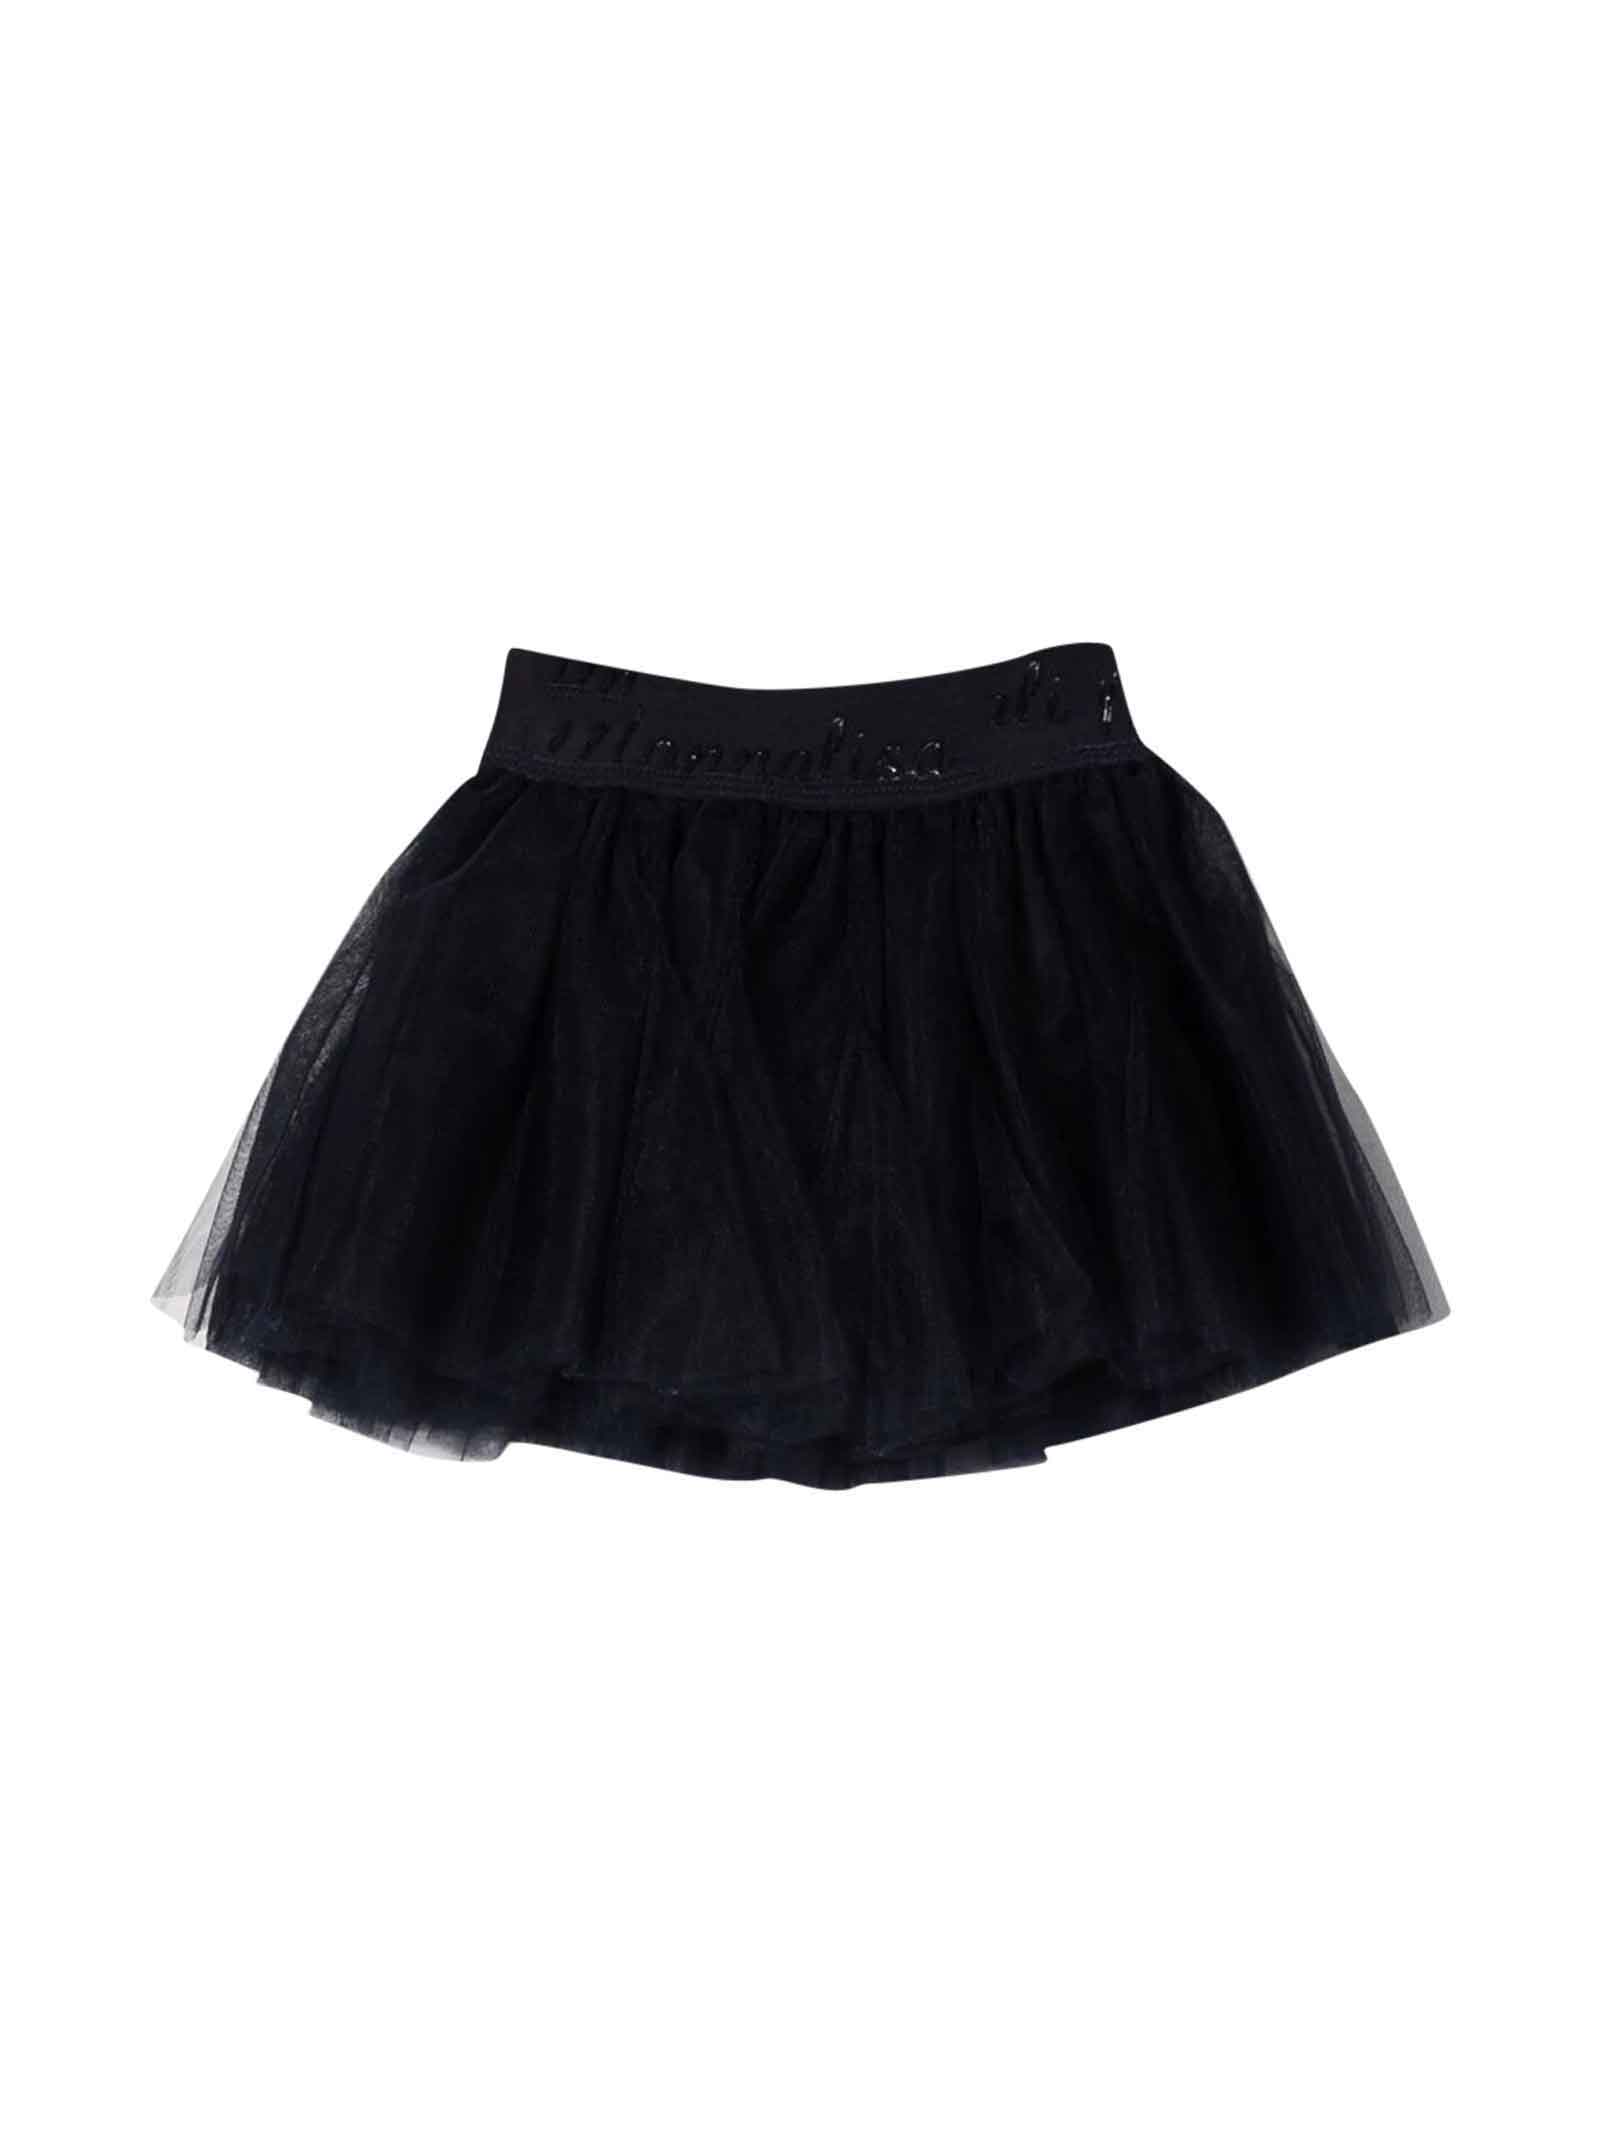 Monnalisa Newborn Black Skirt